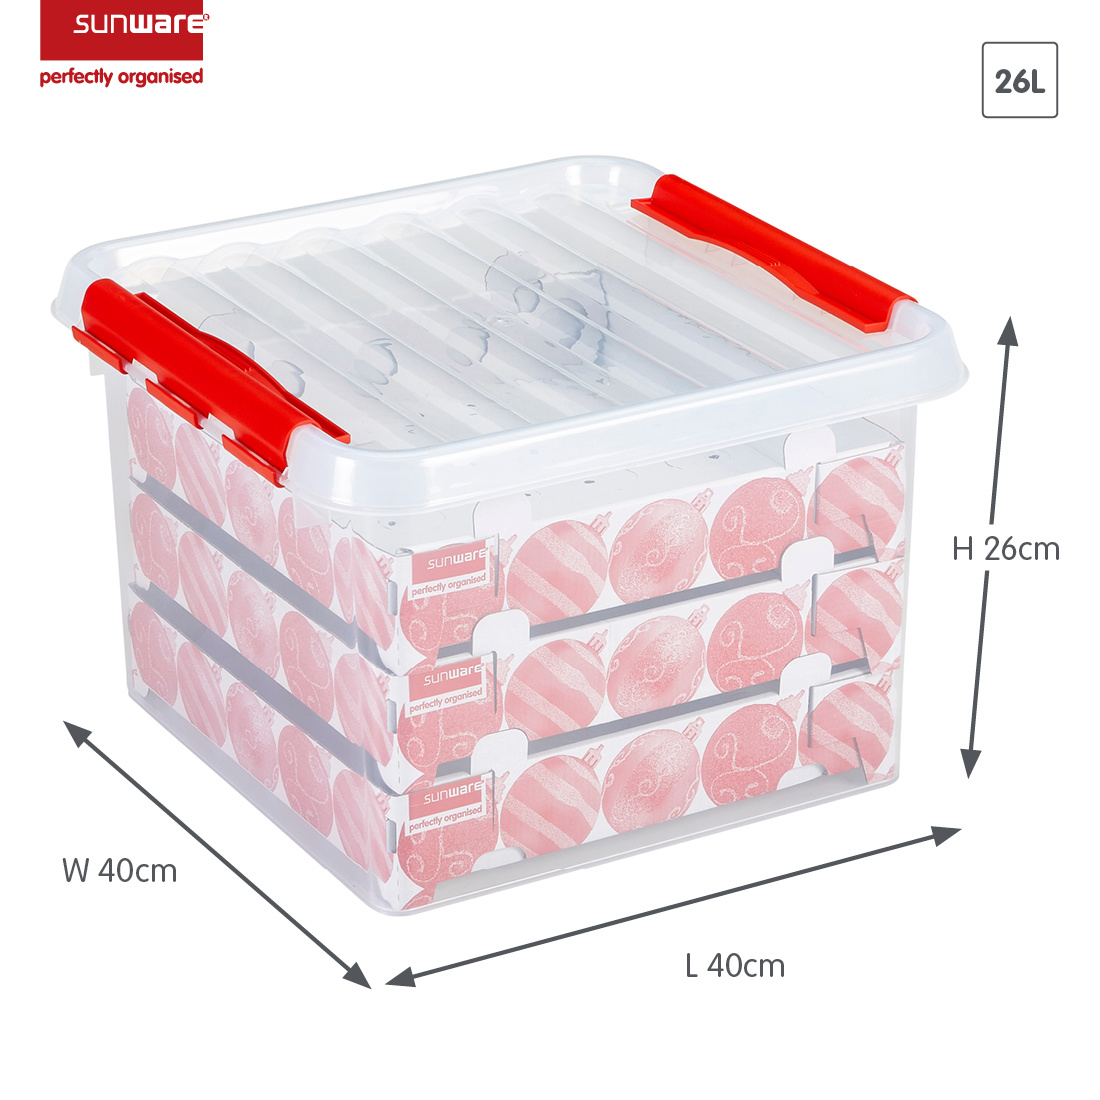 Q-line kerst opbergbox 26L met trays voor 75 kerstballen transparant rood